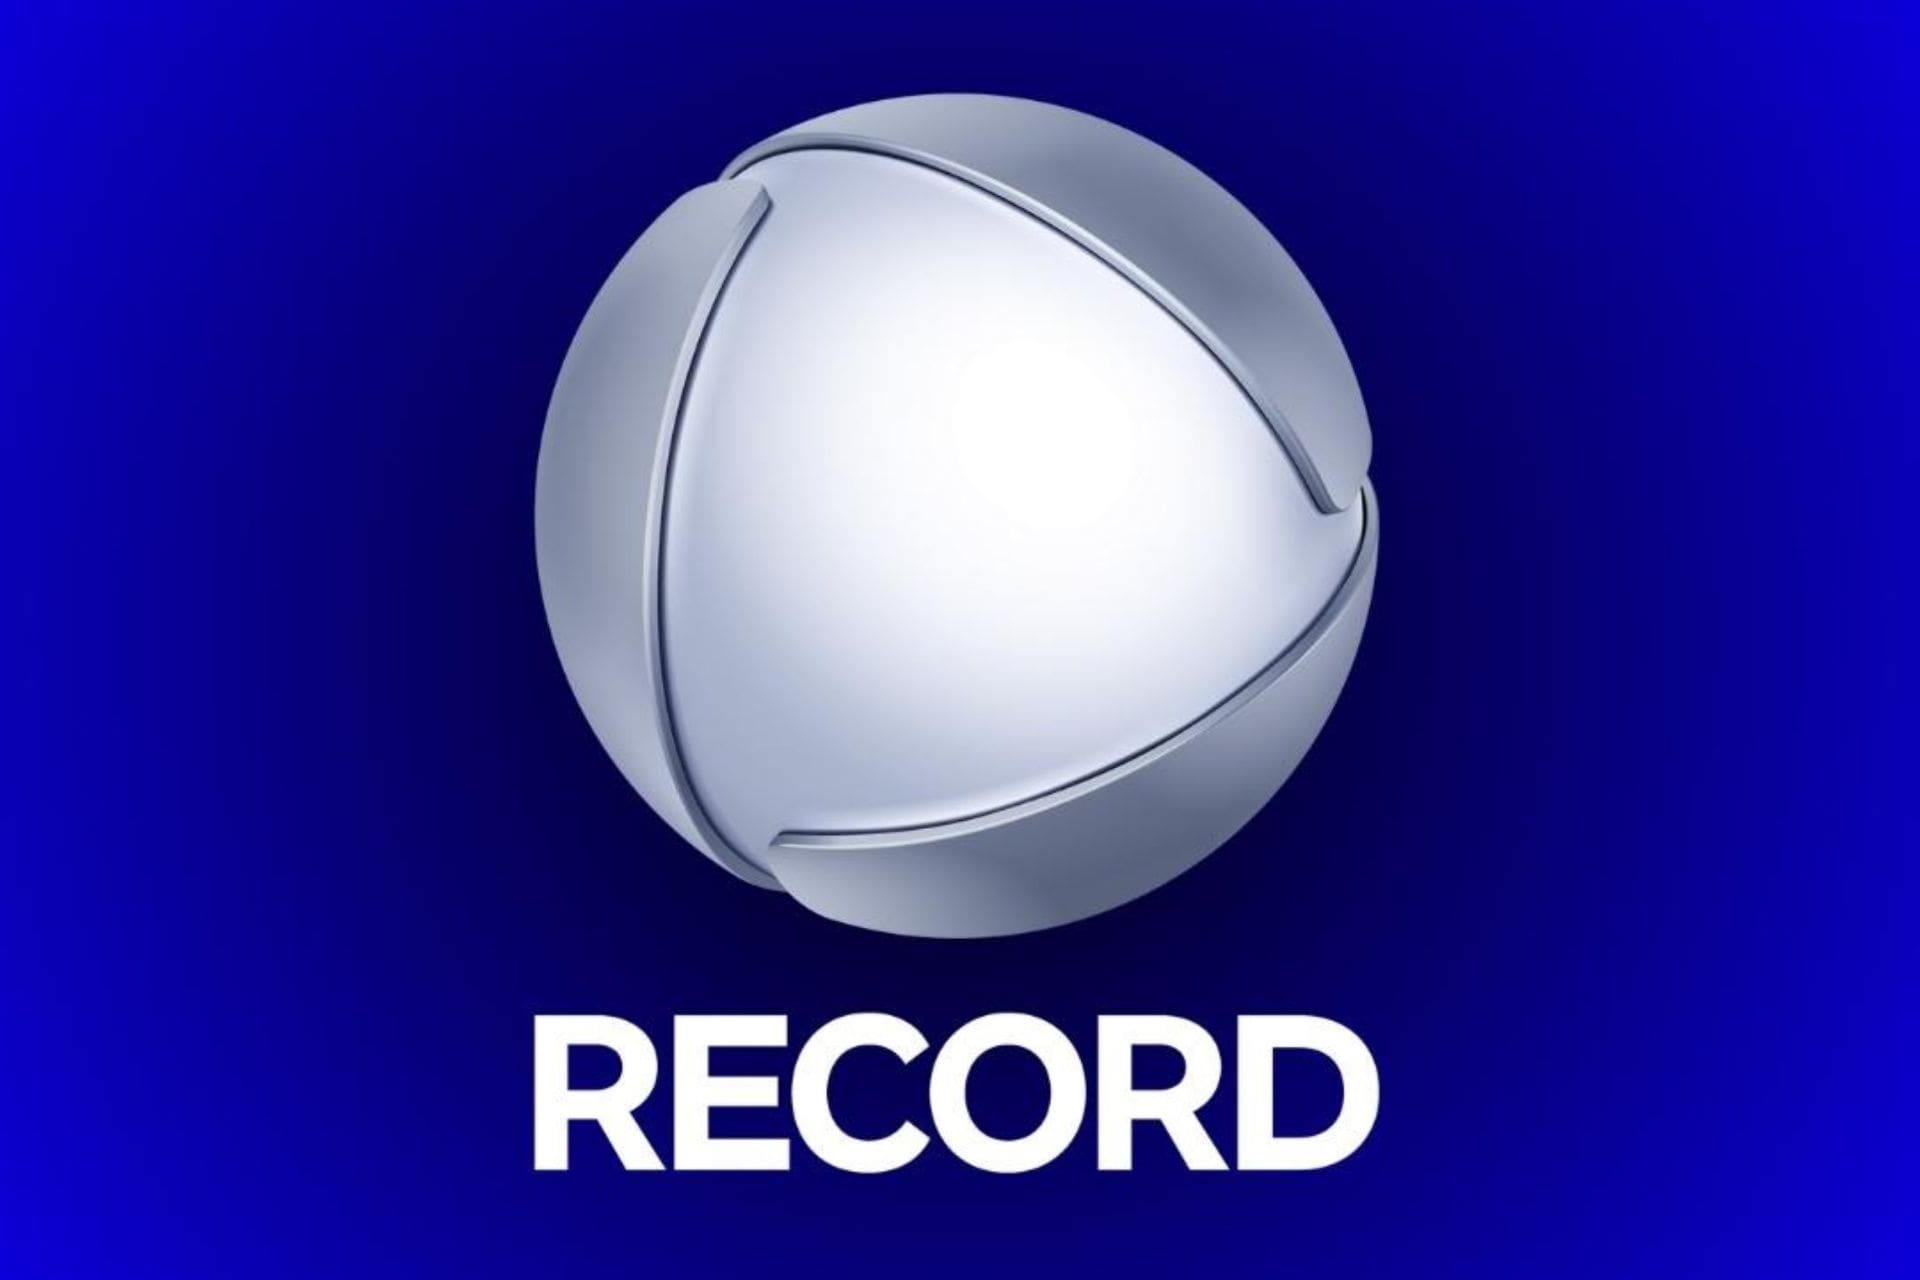 RECORD e RECORD NEWS apresentam nova identidade visual